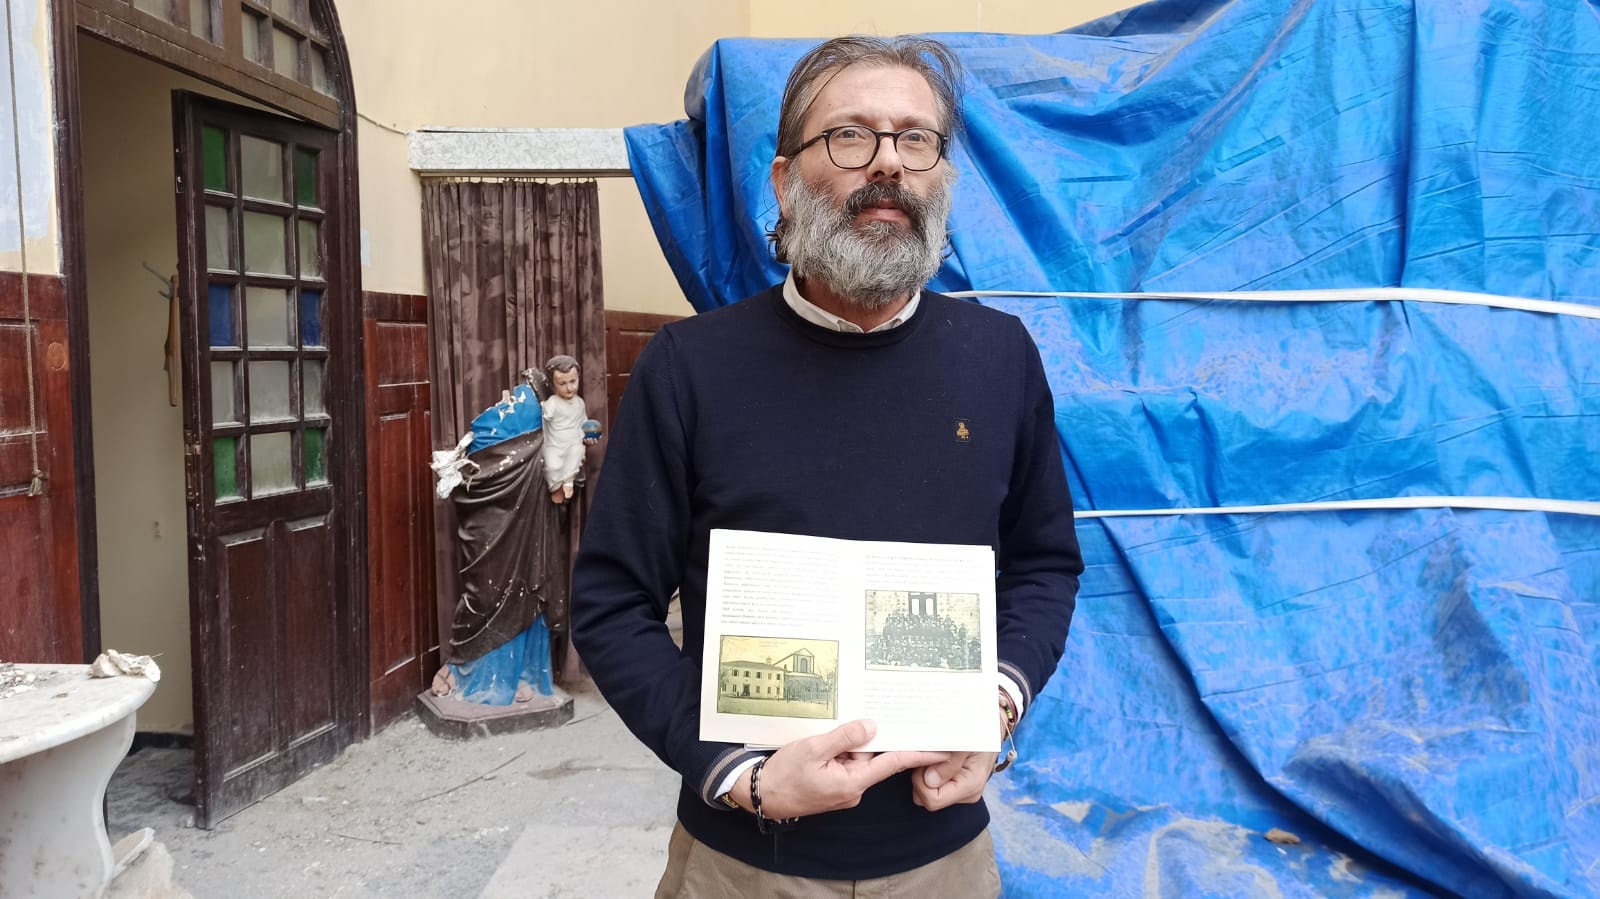 Depremde yıkılan 165 yıllık kilisenin tarihi kitaplaştırıldı